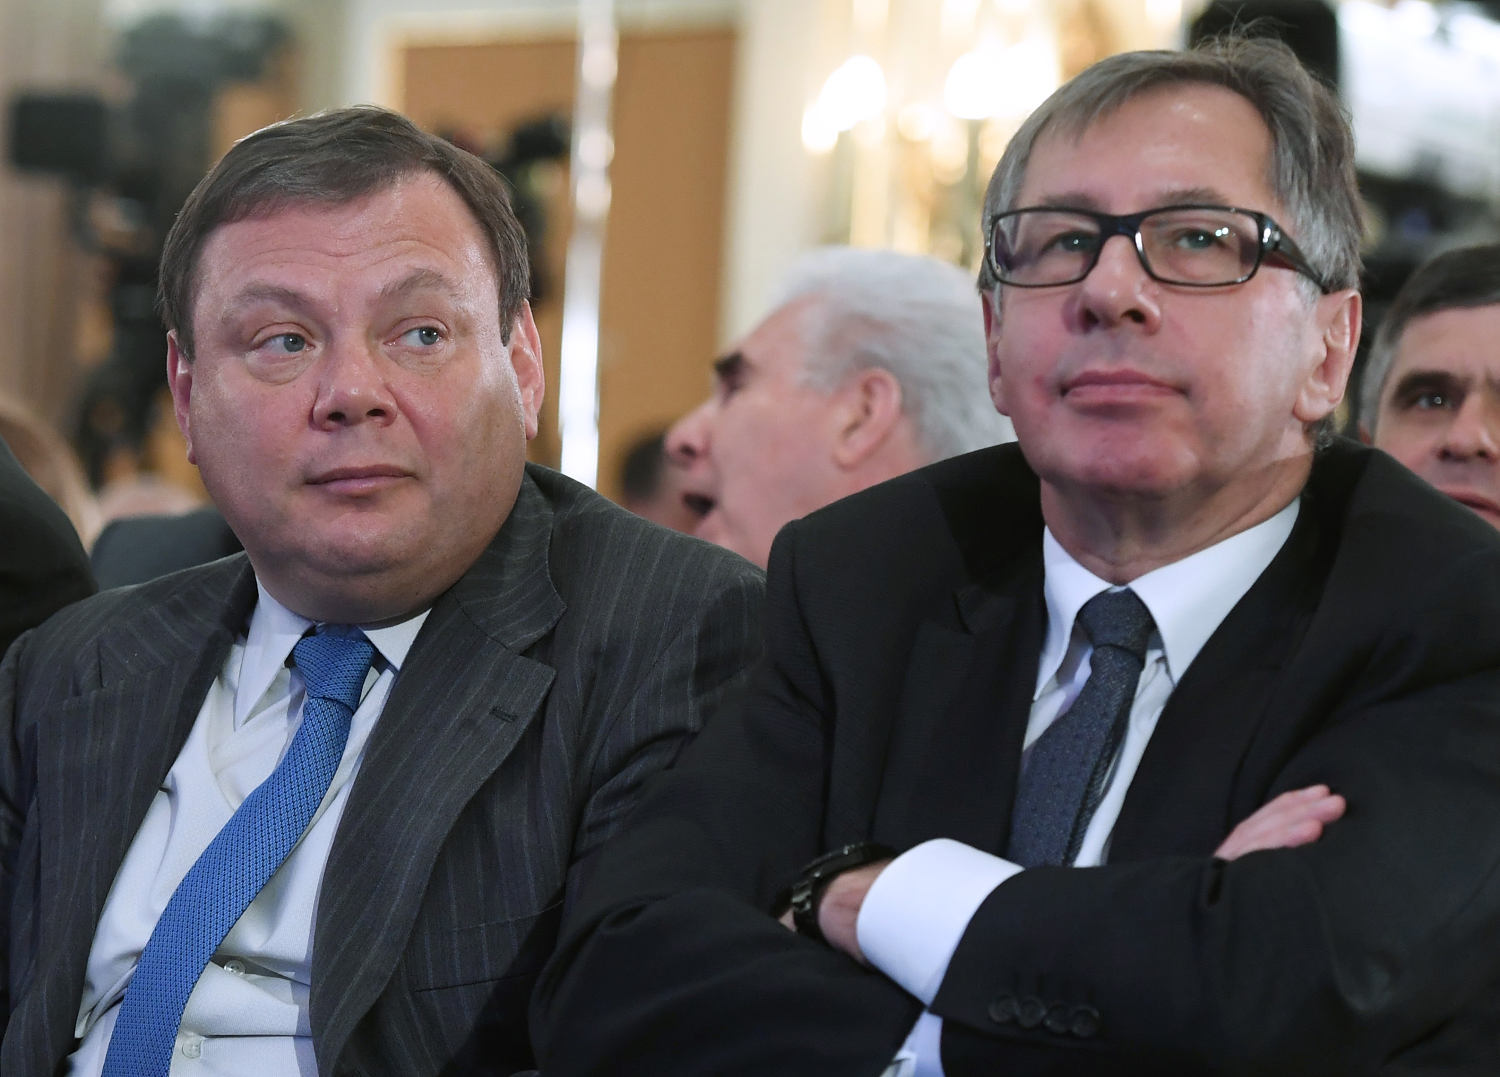 European court takes Russian billionaires off sanctions list